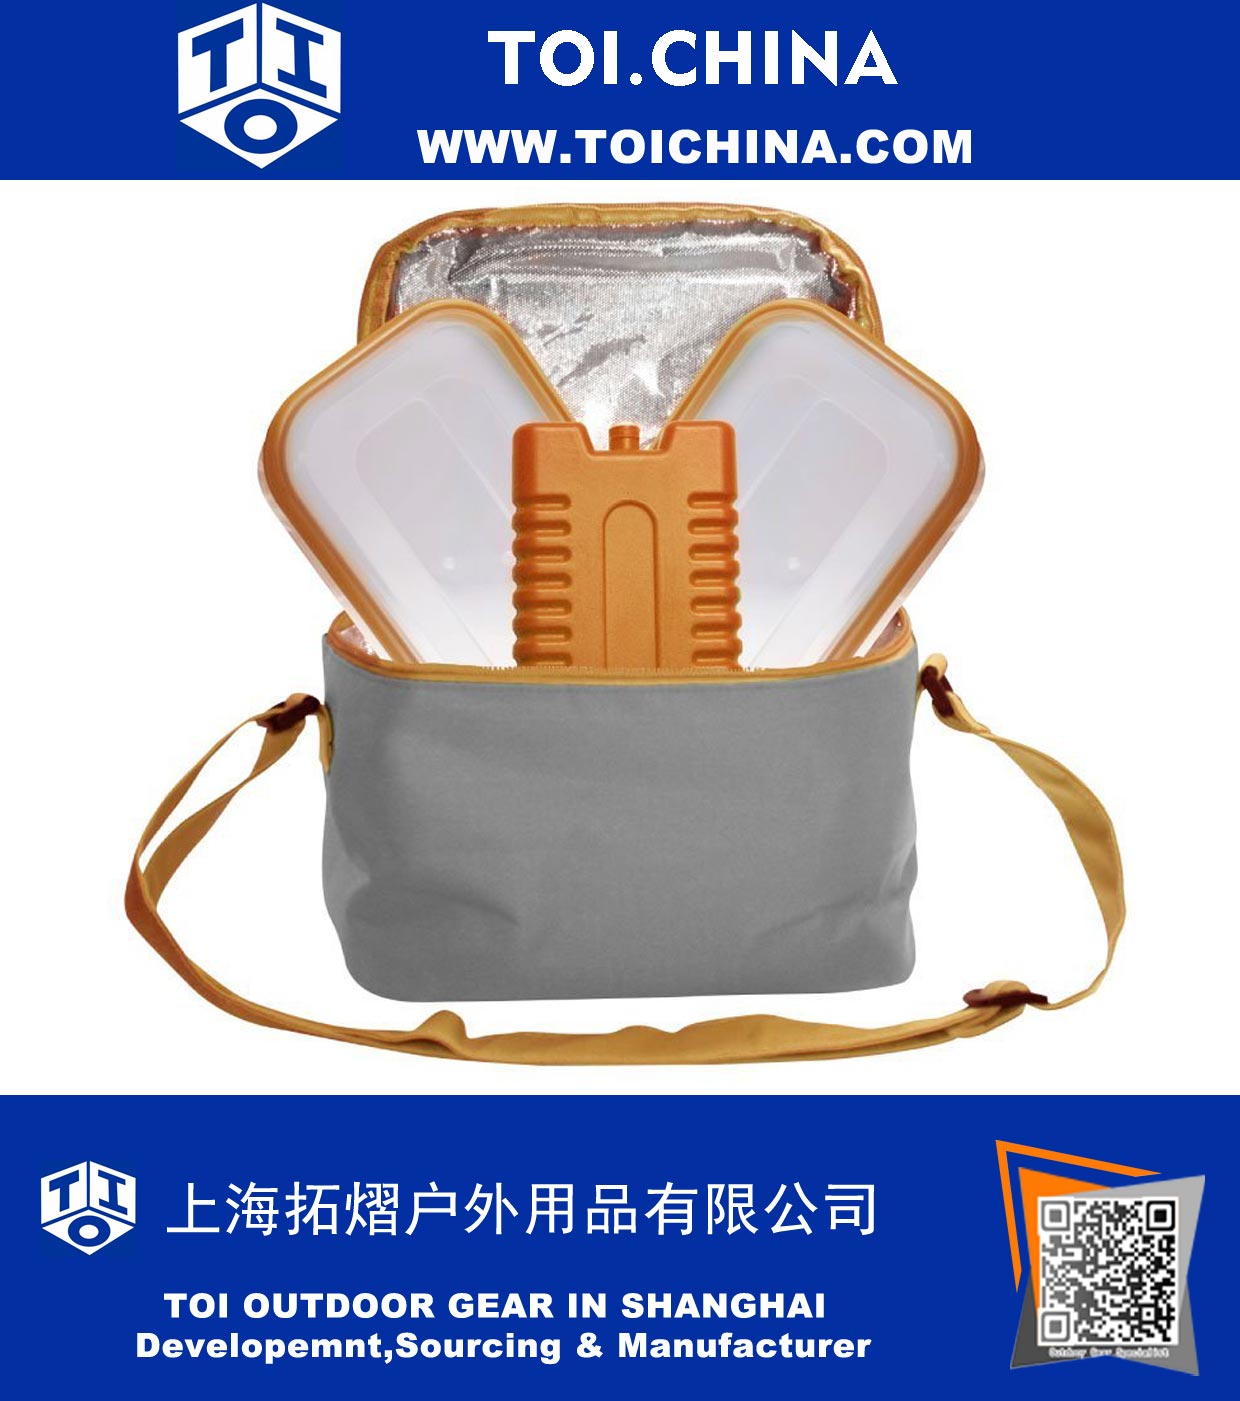 Yeniden Kullanılabilir Premium İzoleli Ağır Tote Lunch Bag